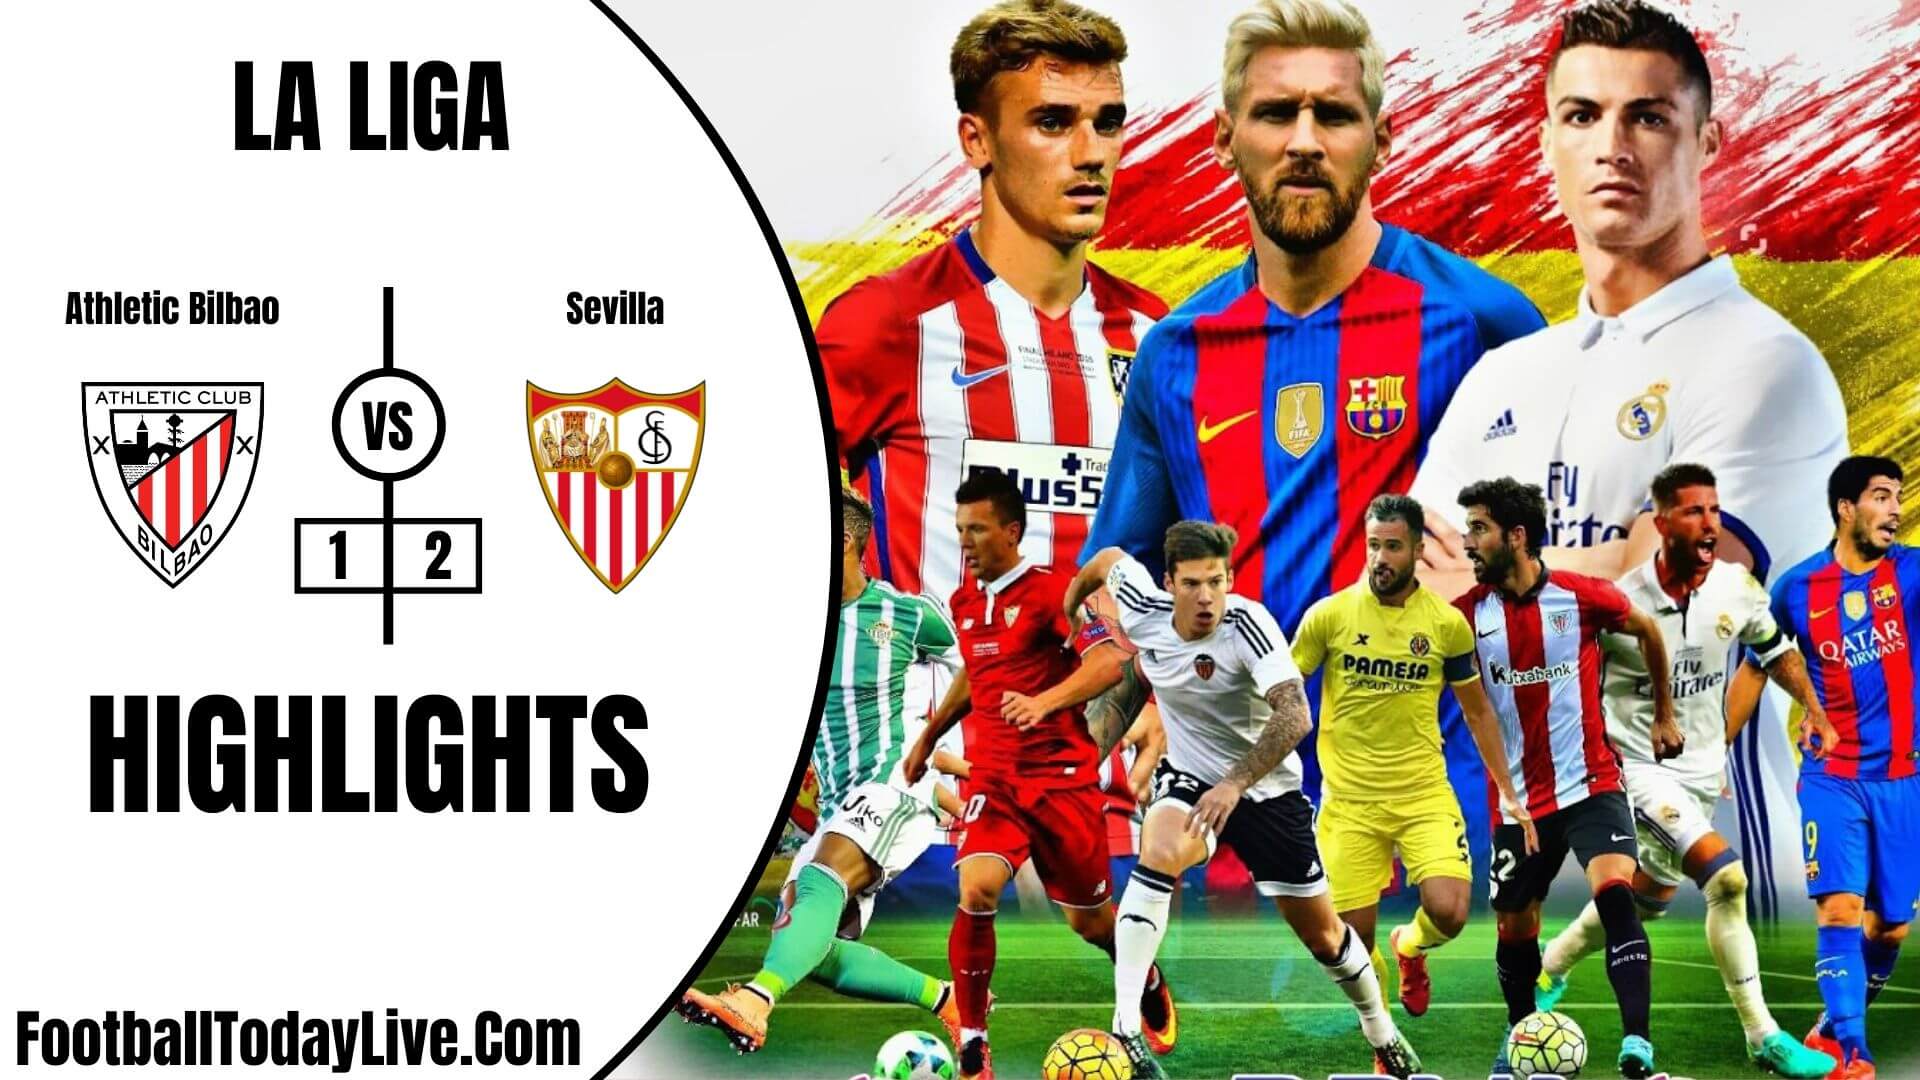 Athletic Bilbao Vs Sevilla Highlights 2020 La Liga Week 35